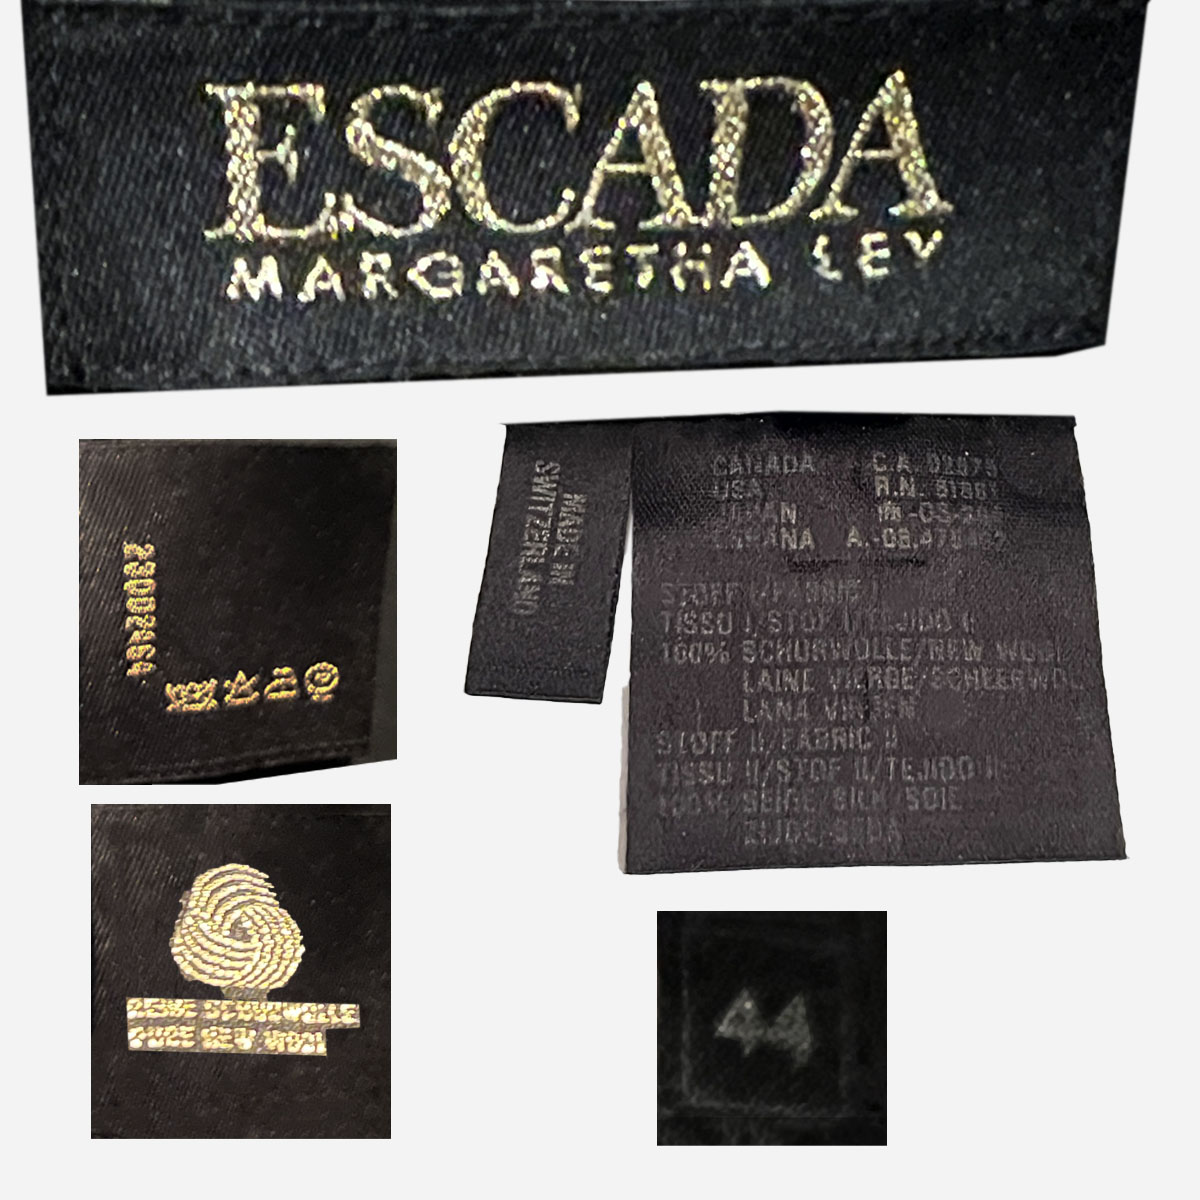 Escada by Margaretha Ley label